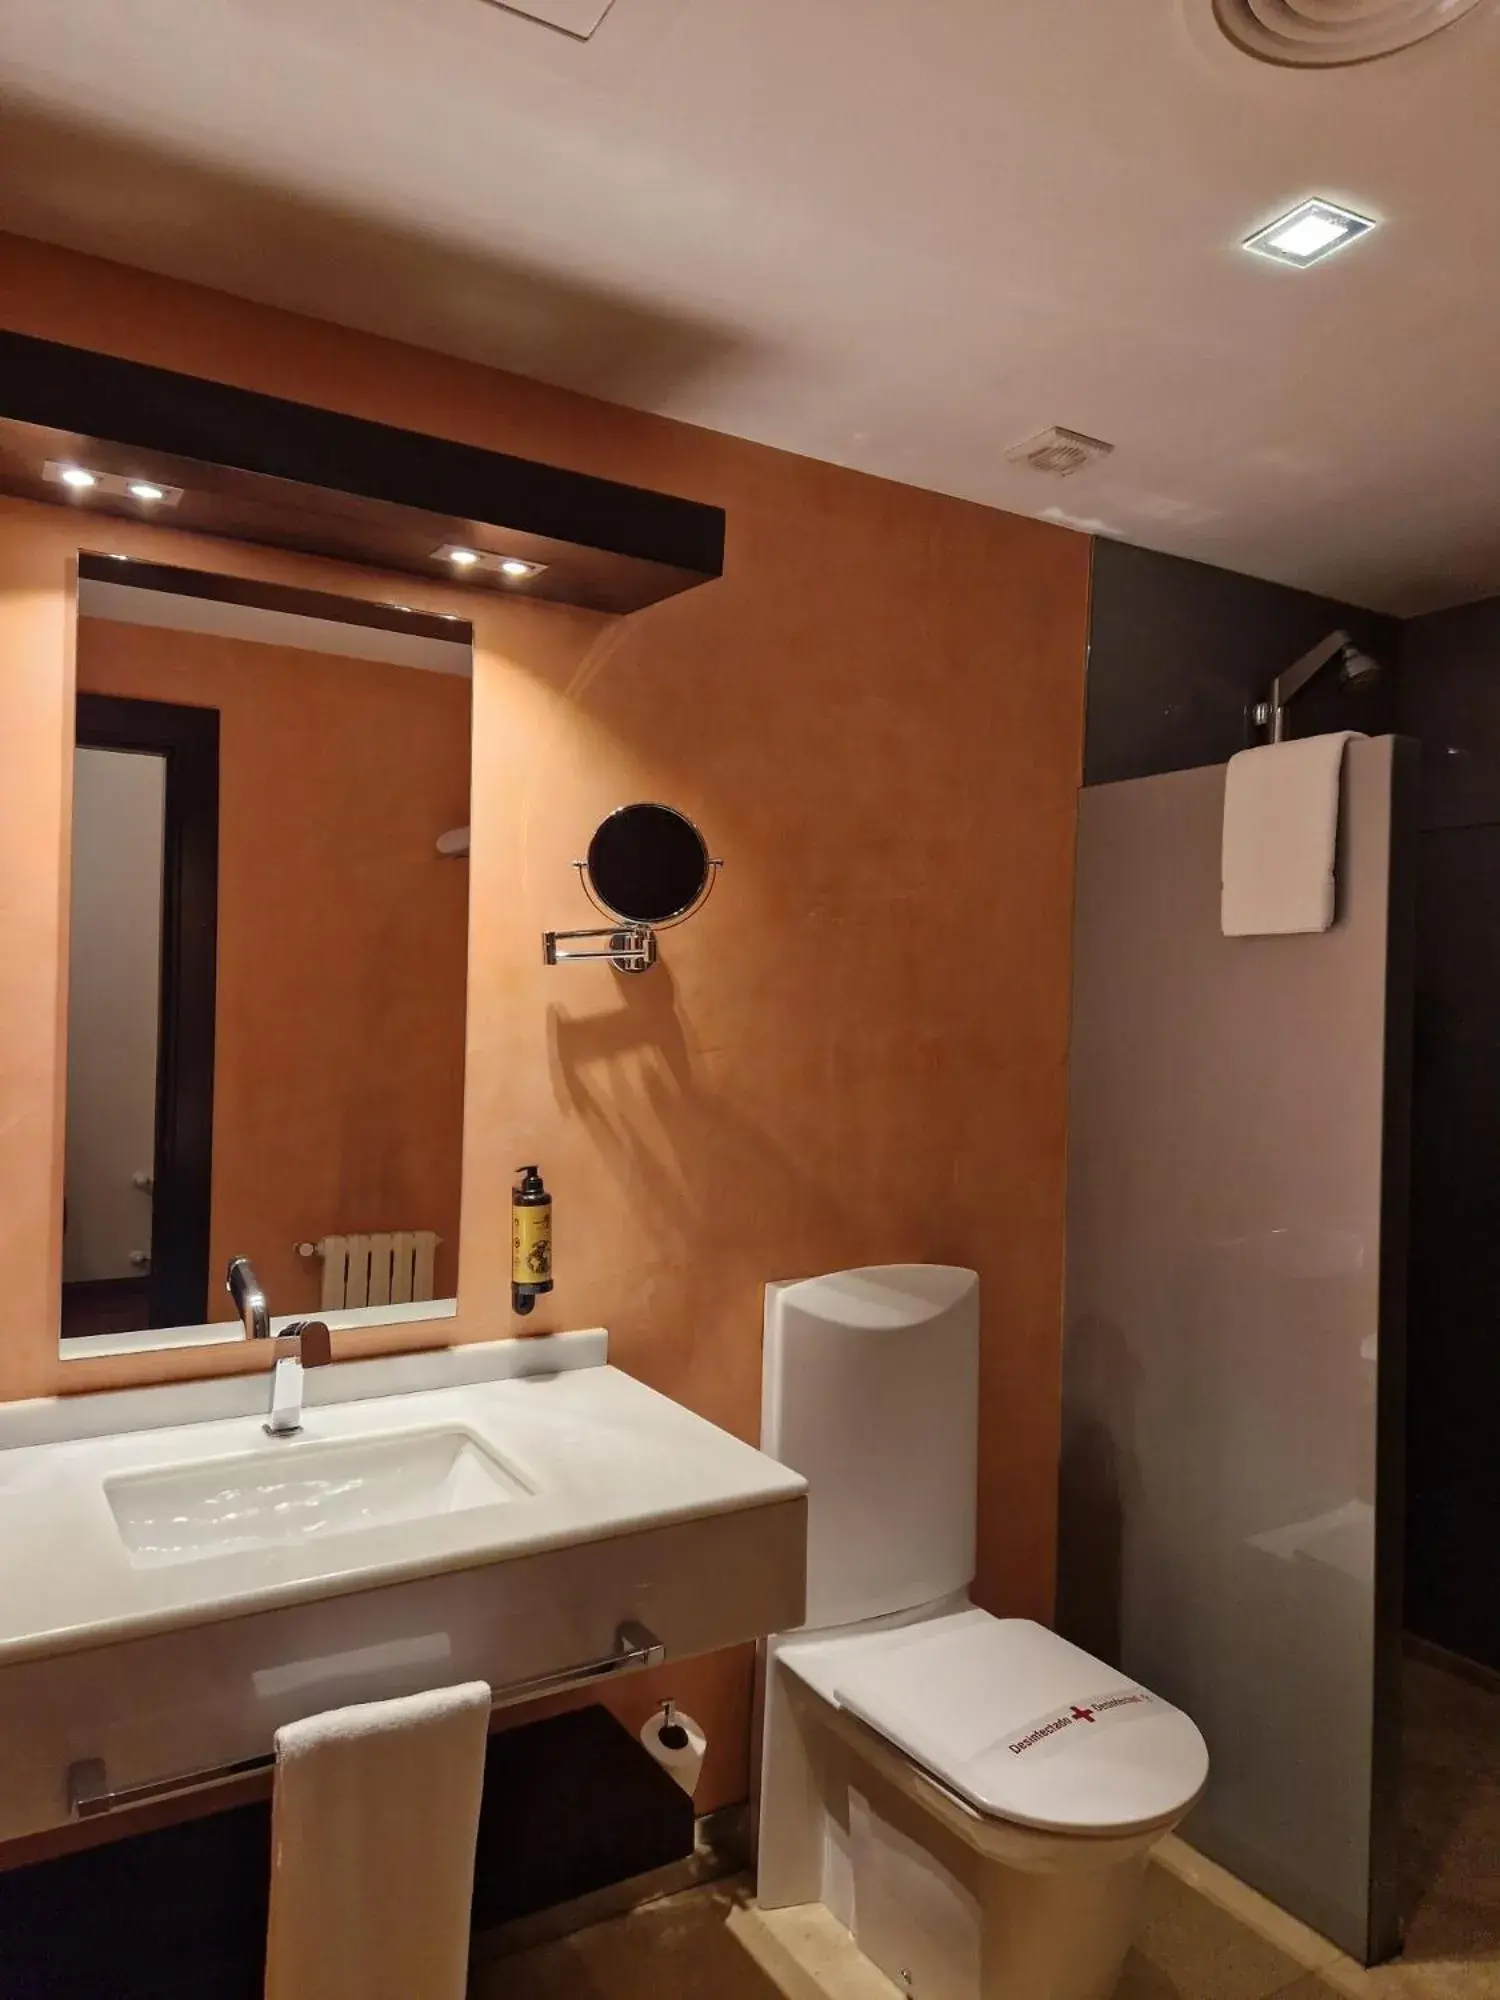 Toilet, Bathroom in Hotel America Vigo